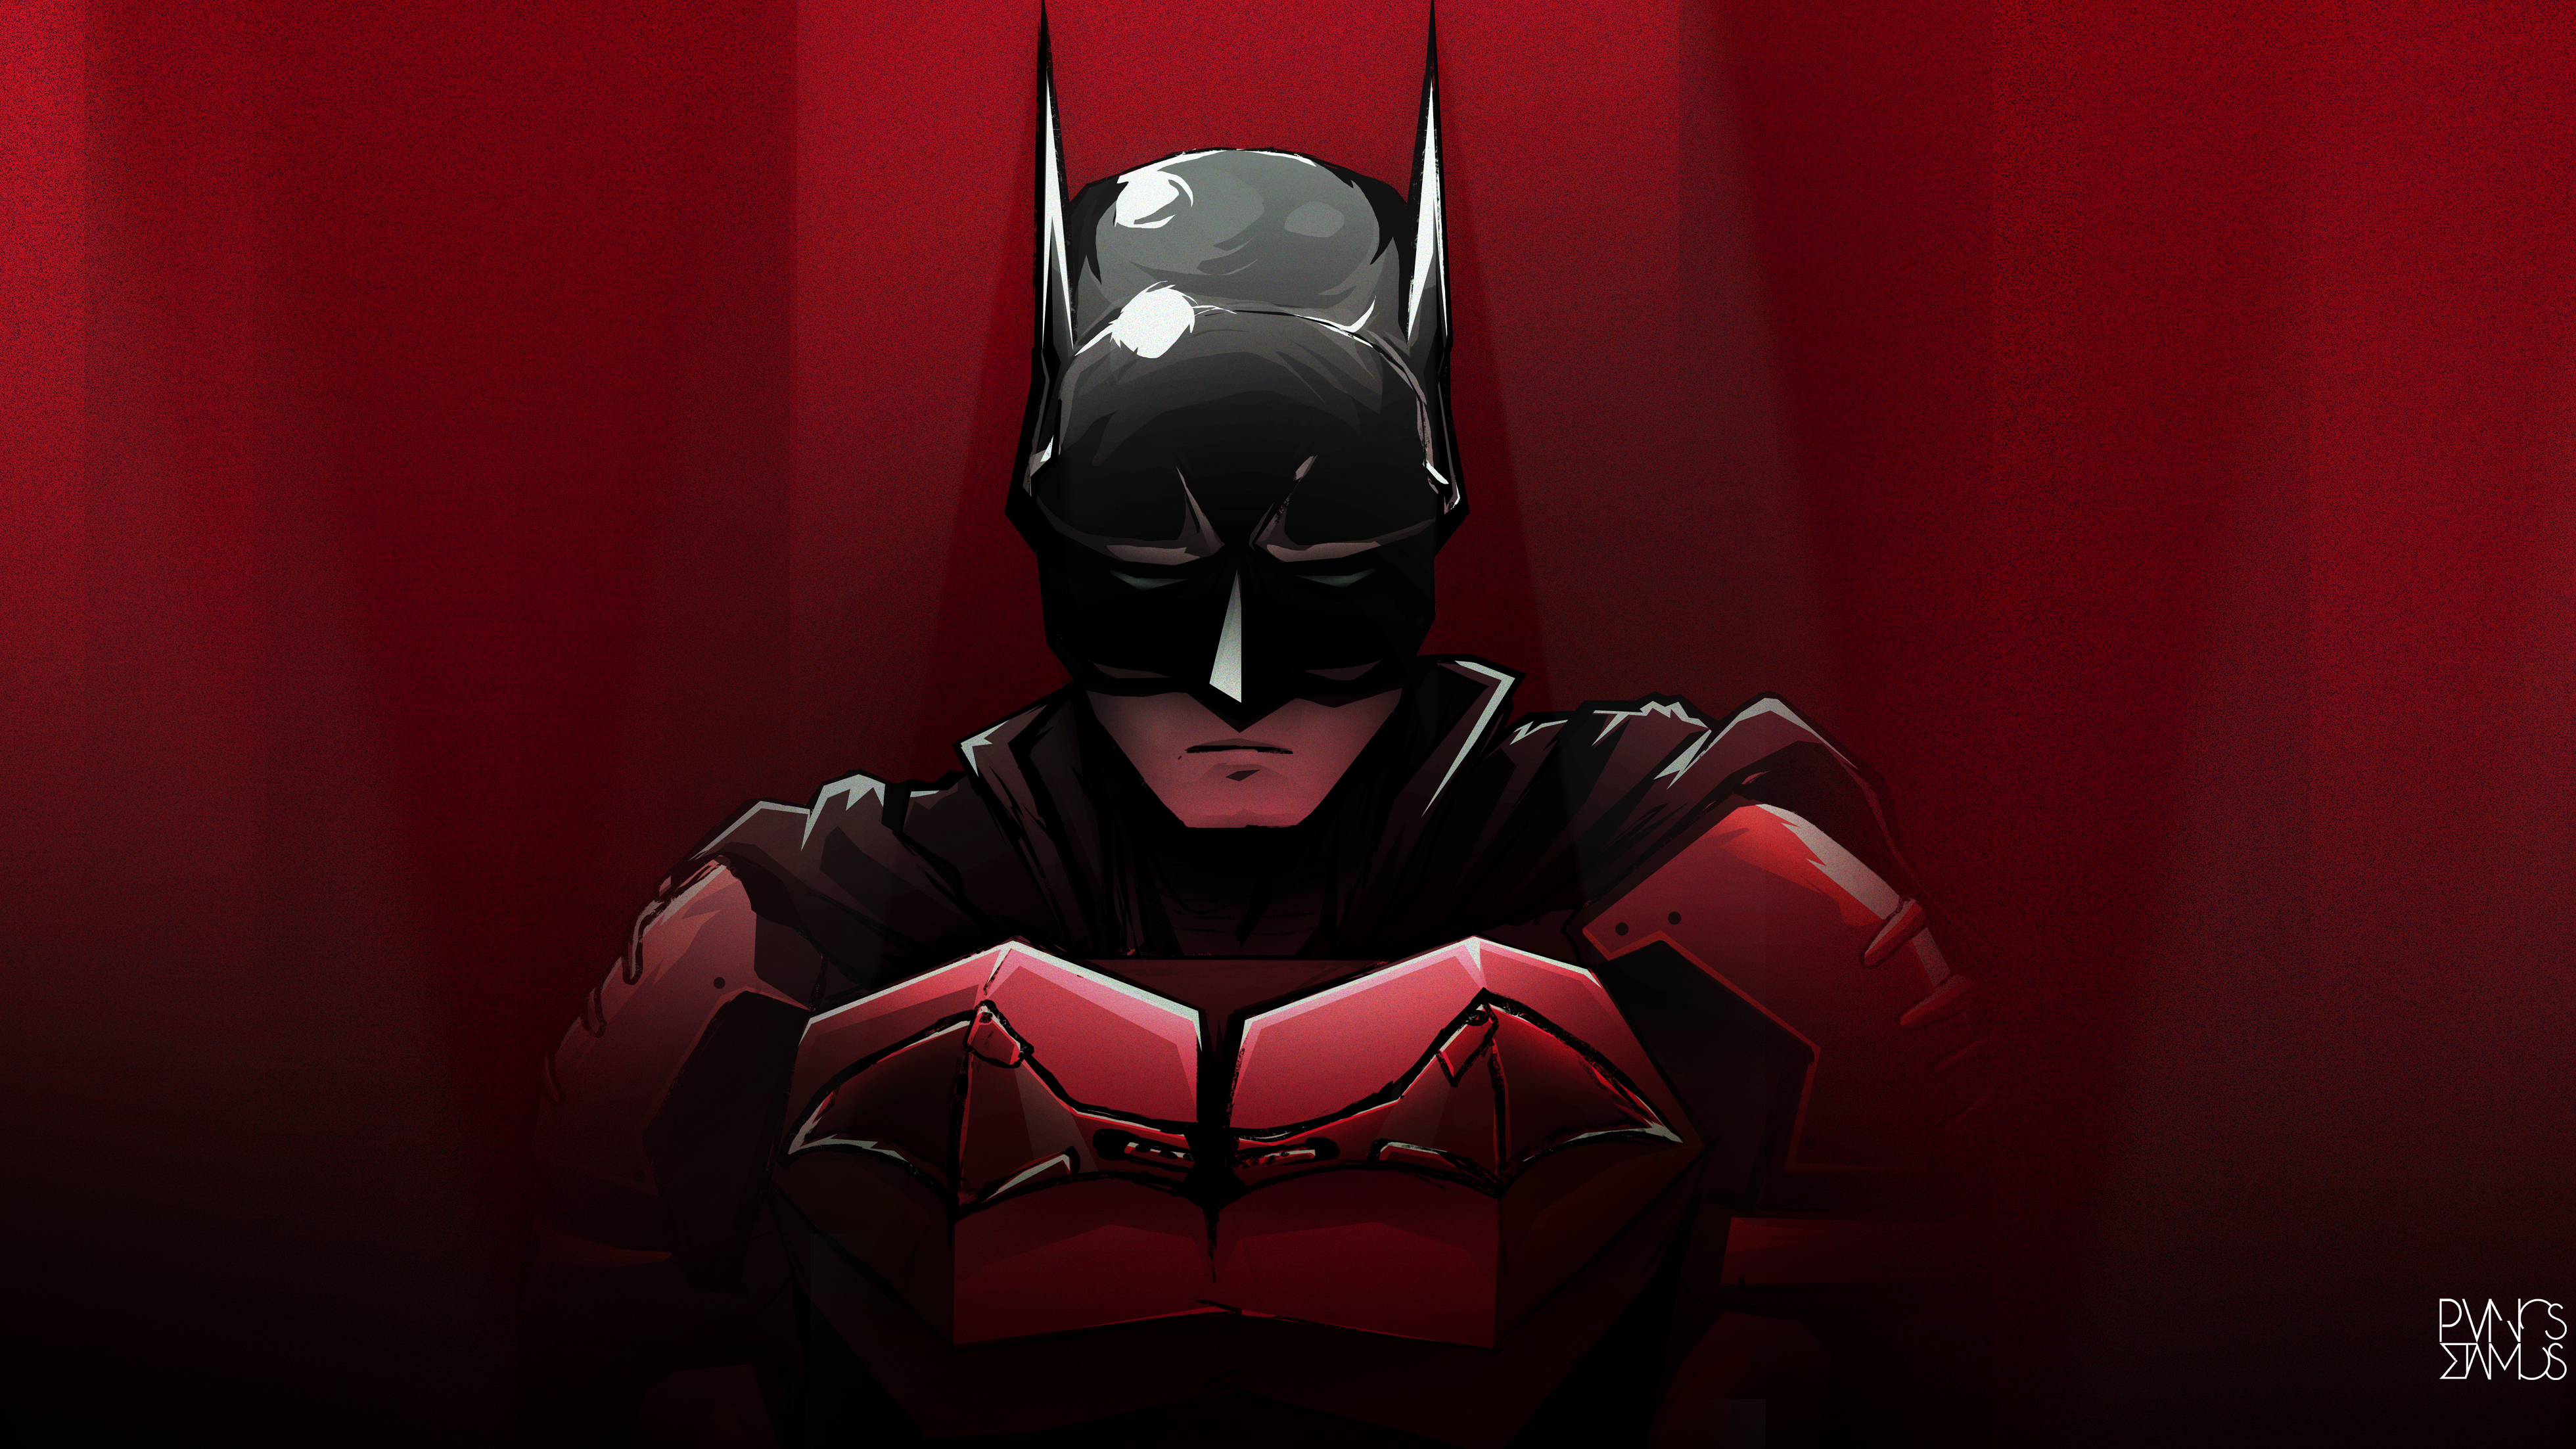 General 3920x2205 Batman Batman Eternal artwork PanosStamo digital art red frontal view